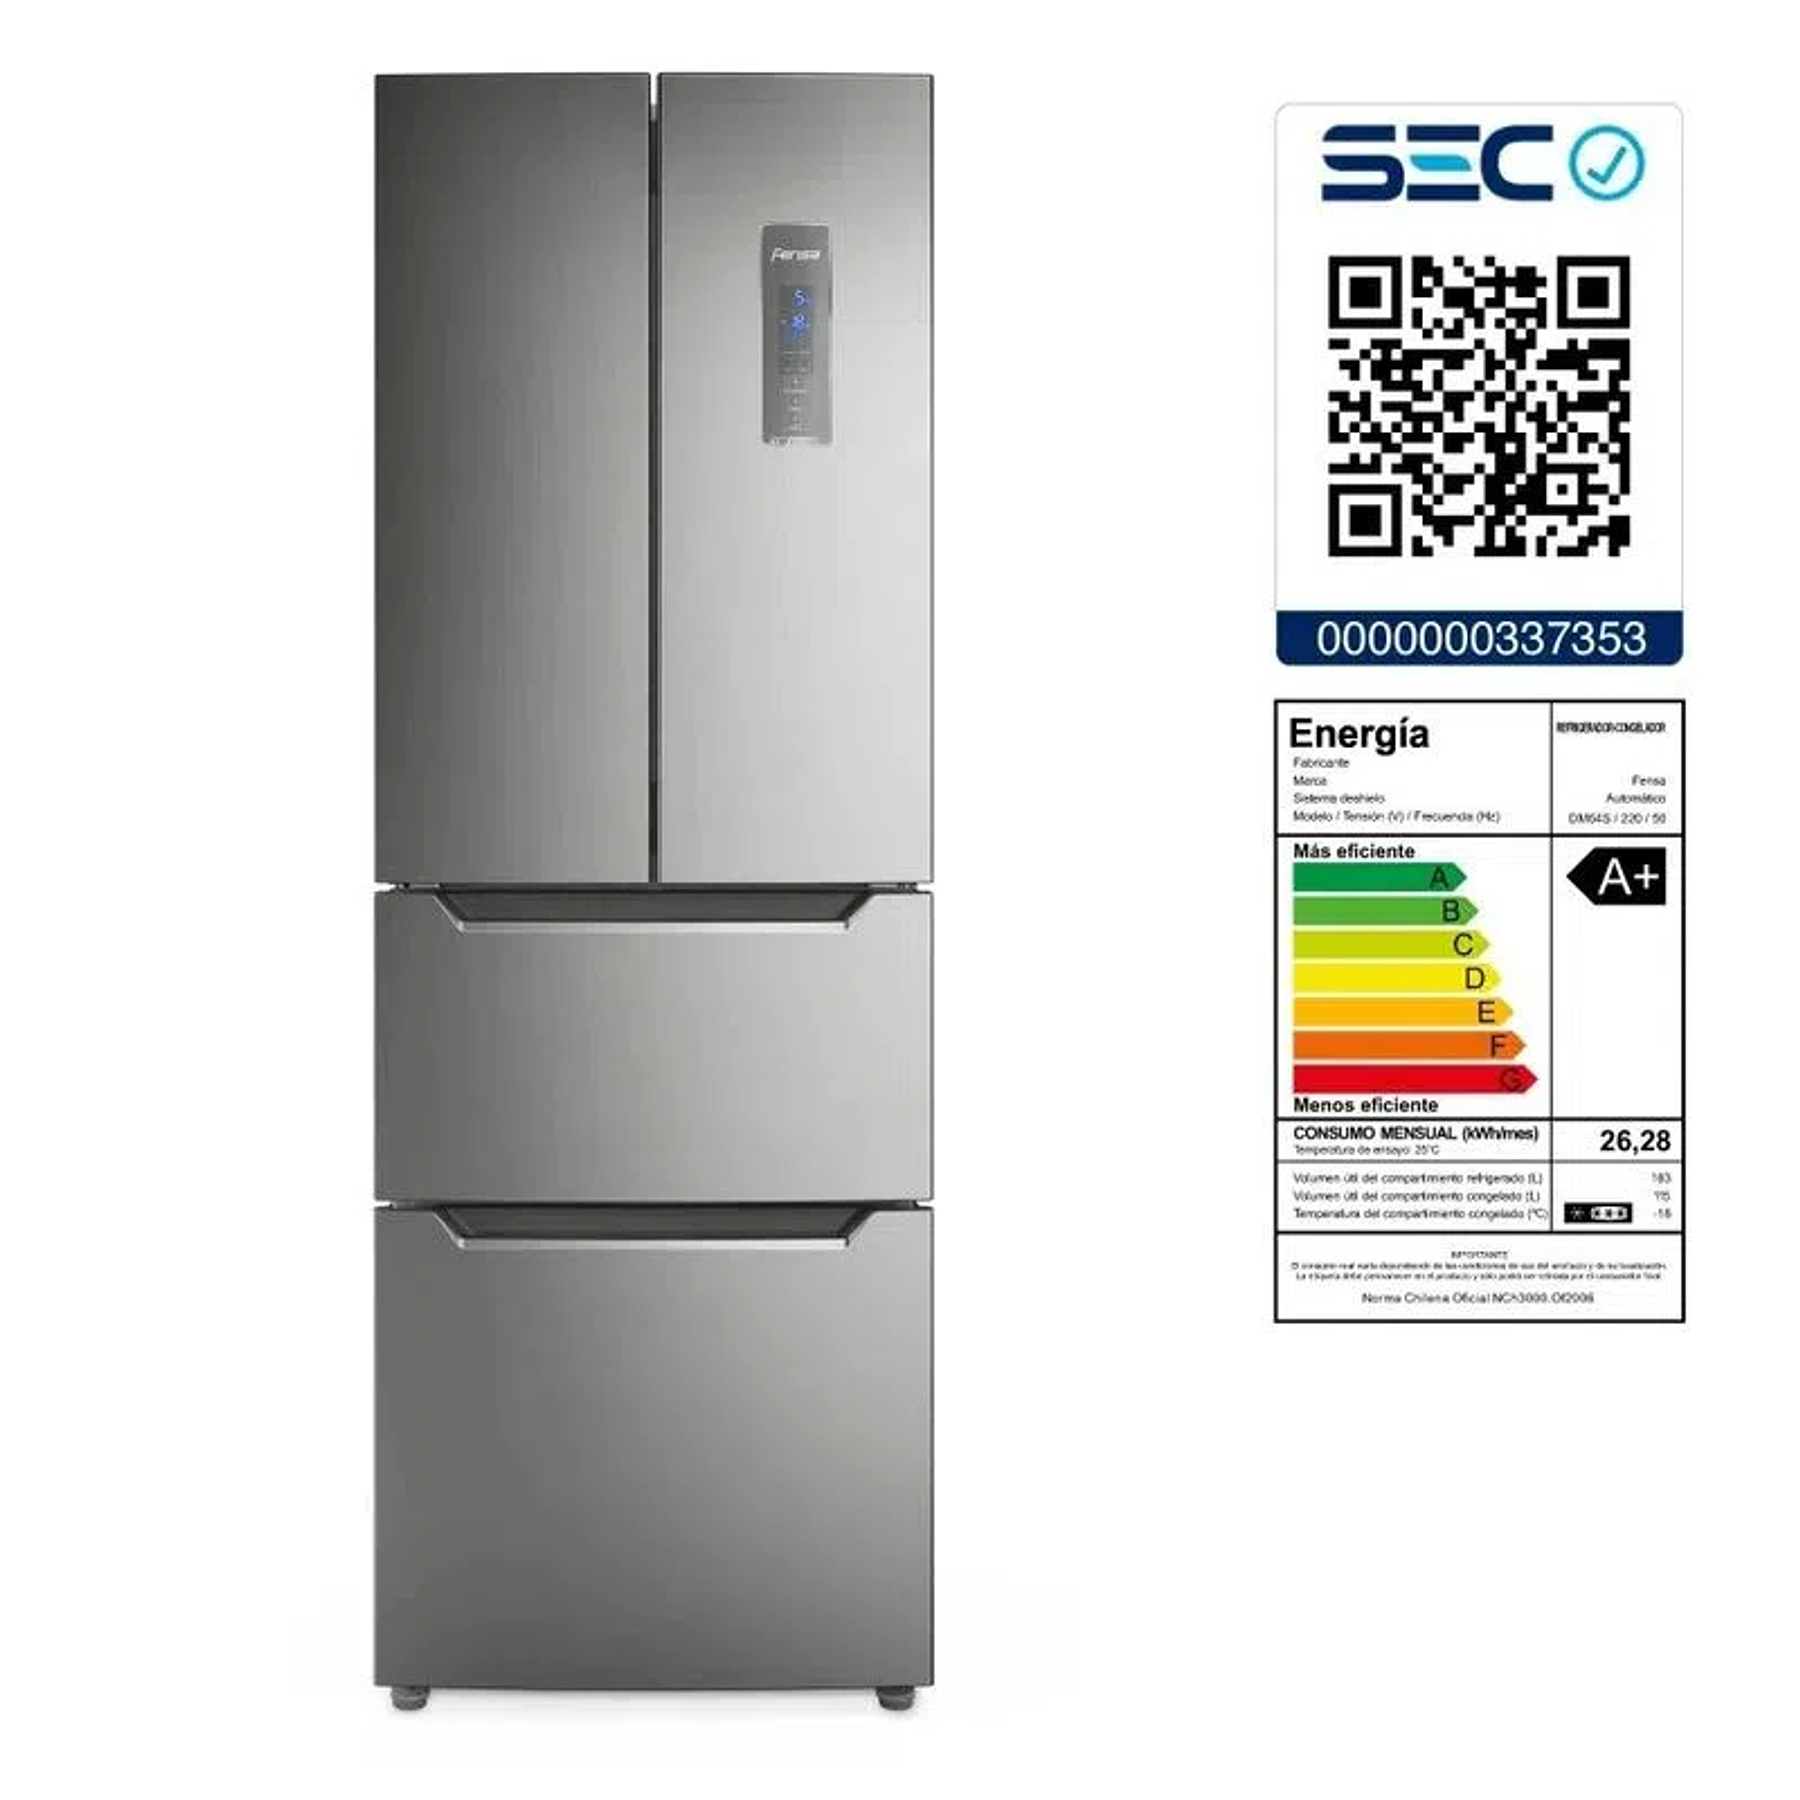 Refrigerador Fensa DM64S 298L No Frost Multidoor Inverter Su